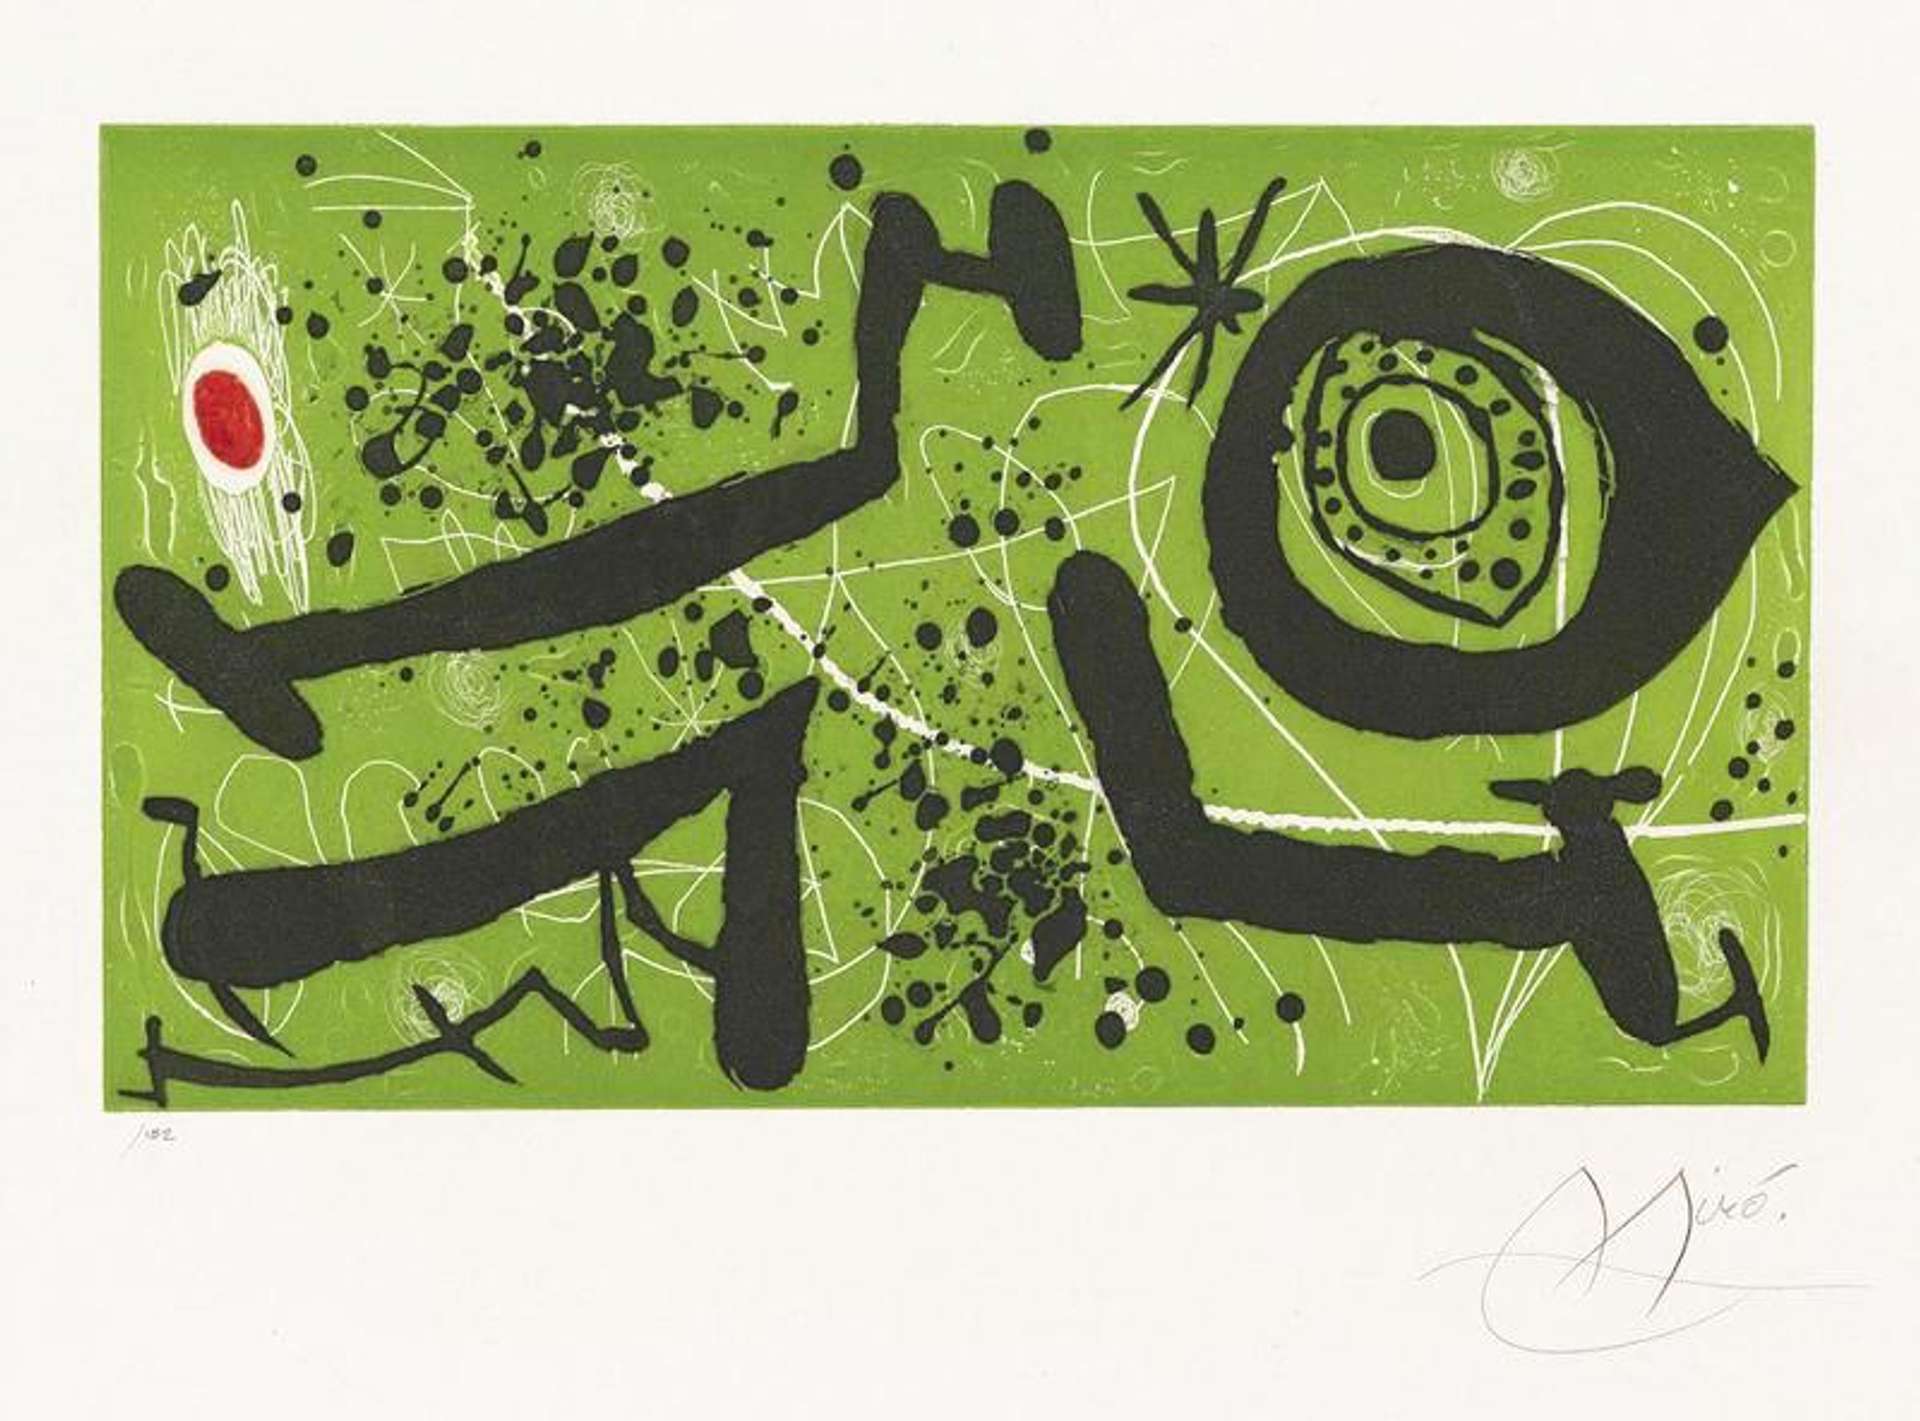 Joan Miró: Picasso I Els Reventos I - Signed Print